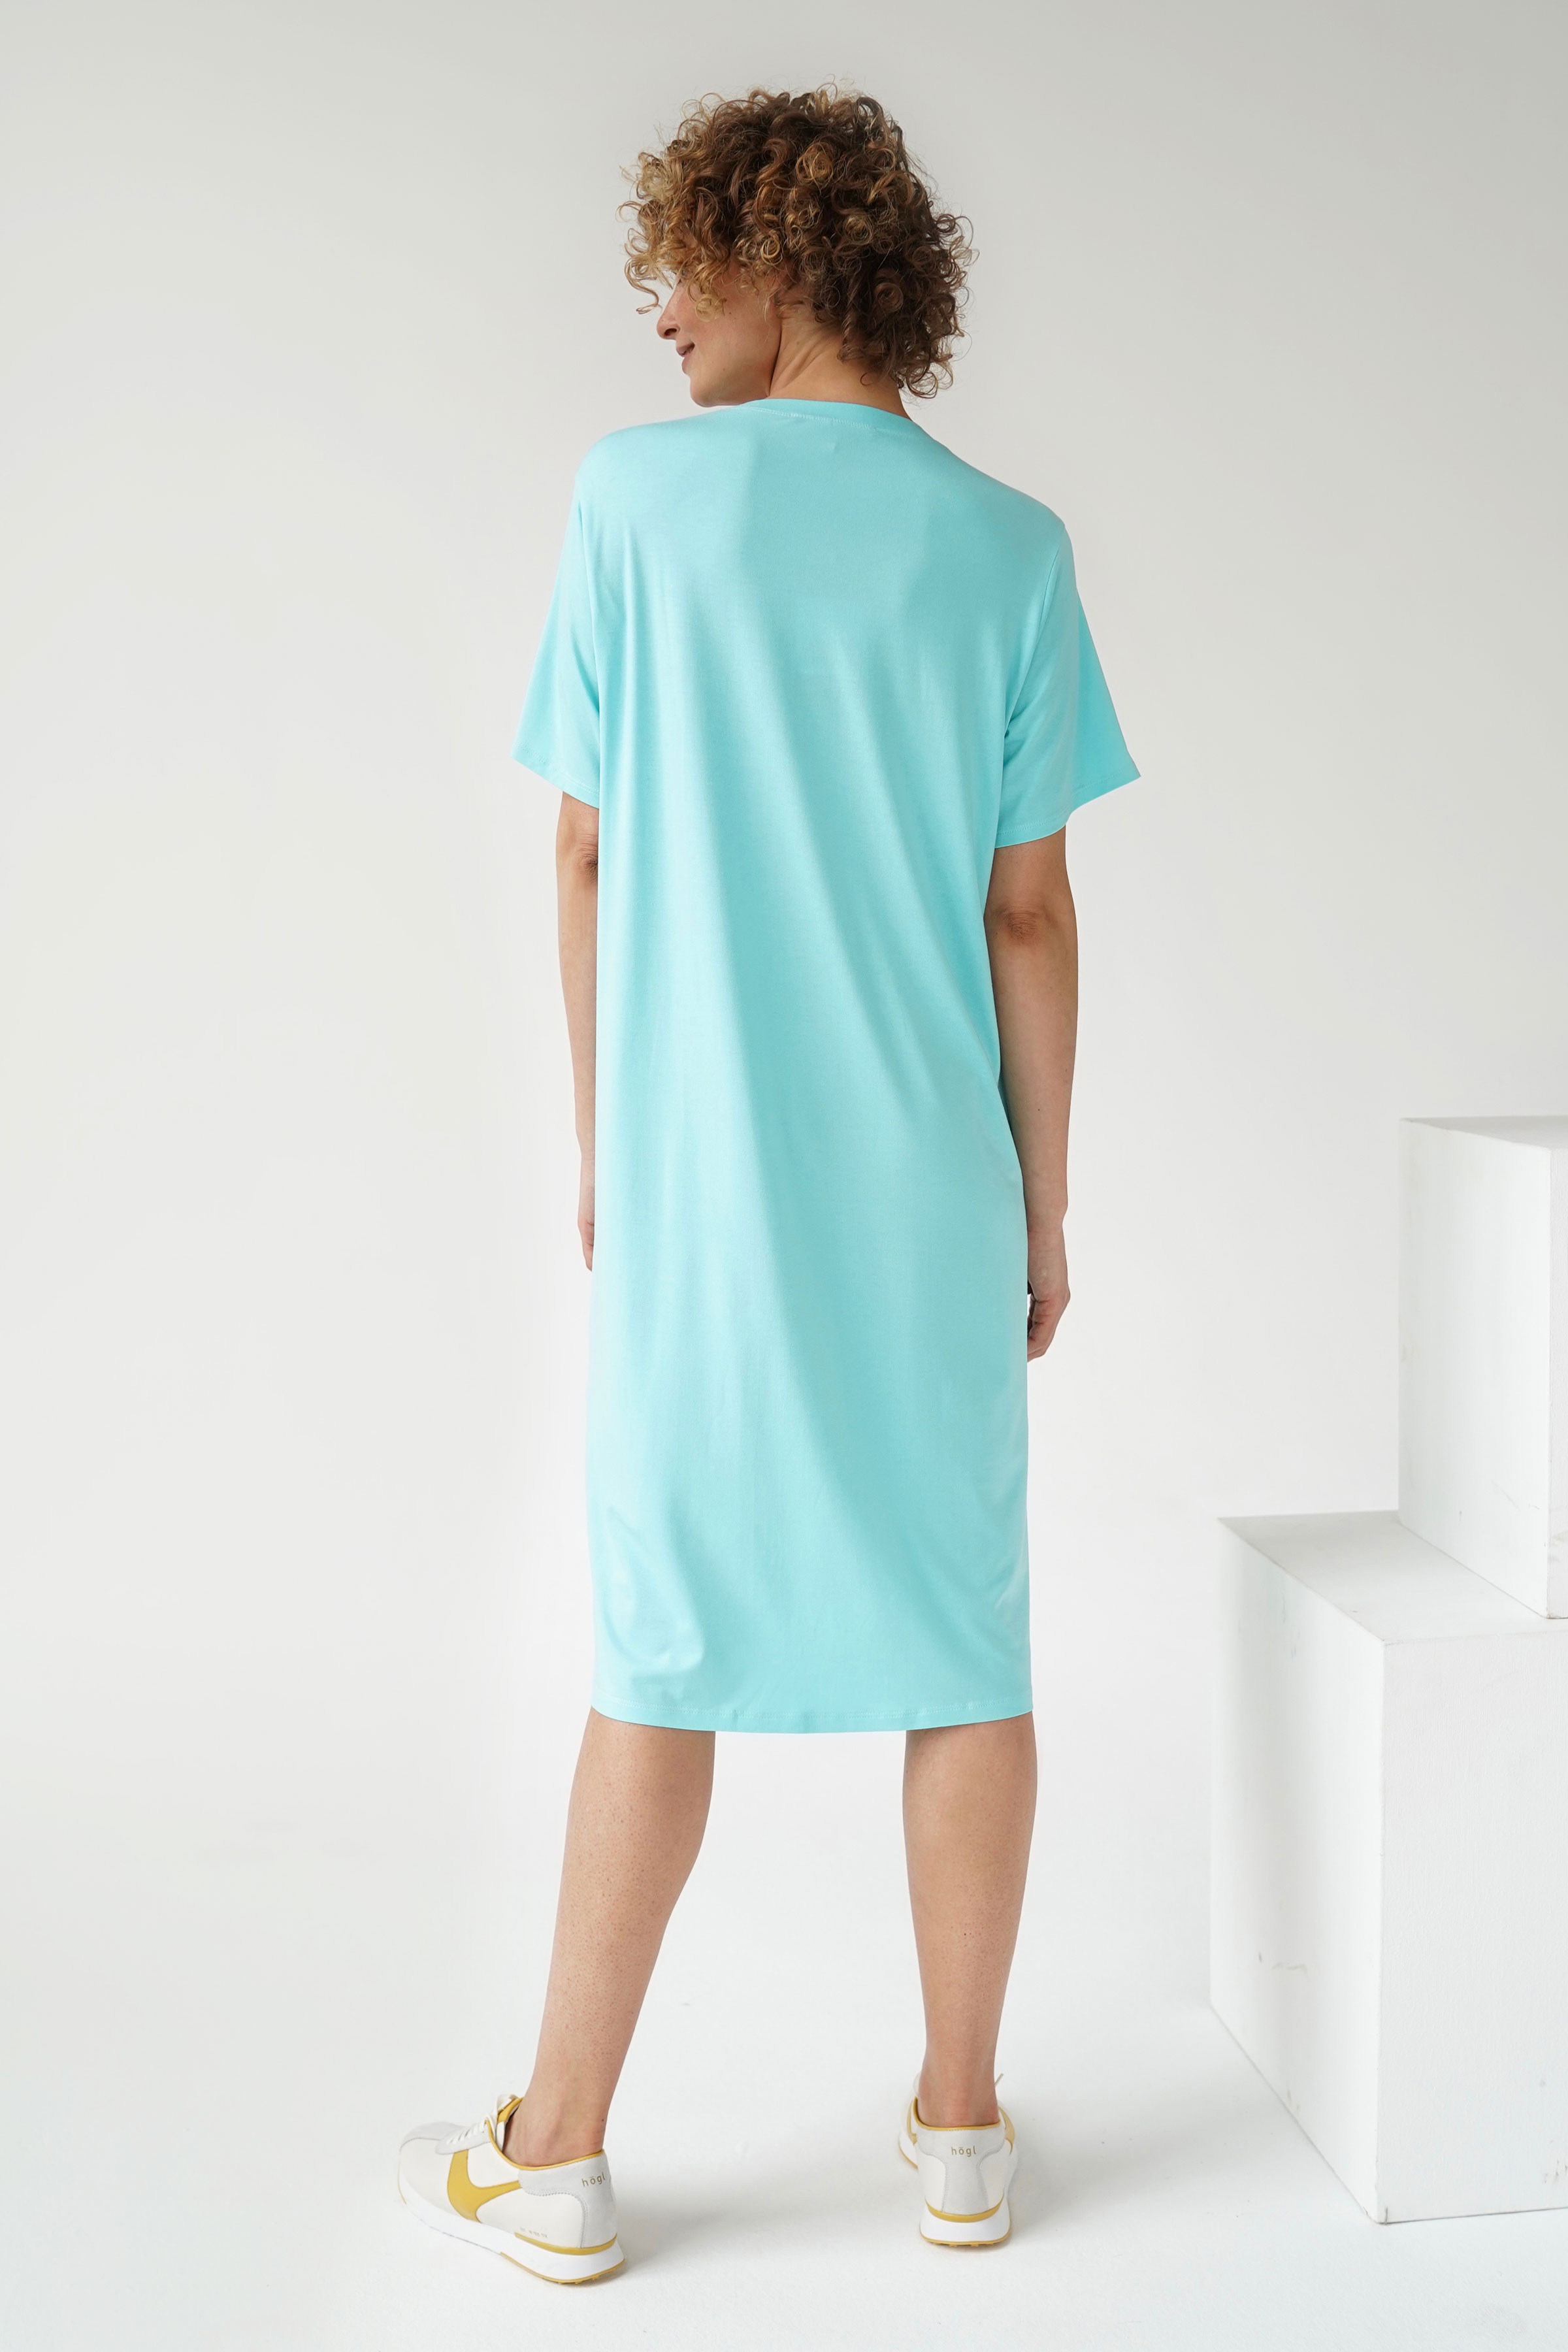 Платье-футболка база с коротким рукавом 63 Ментол (menthol) от Lesel (Лесель)! Заказывайте по ✆ 8 (800) 777 02 37